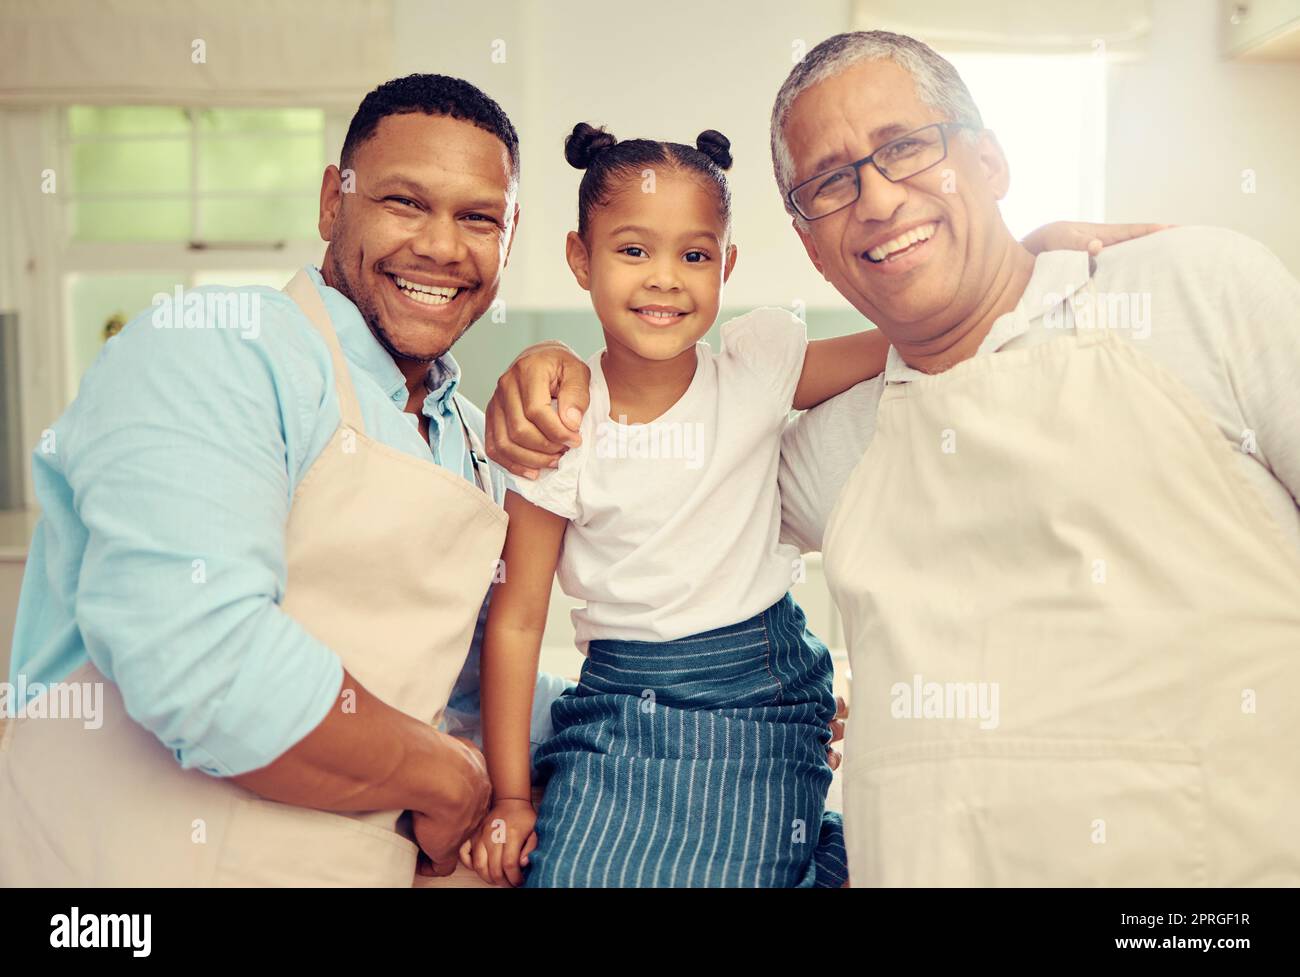 Porträt einer glücklichen Familie nach dem Kochen oder Backen in einer Küche zusammen in einem Haus. Vater, Opa und Mädchen, die sich mit einem Lächeln, Glück und Liebe verbinden, während süßer und liebevoller Momente in der Küche Stockfoto